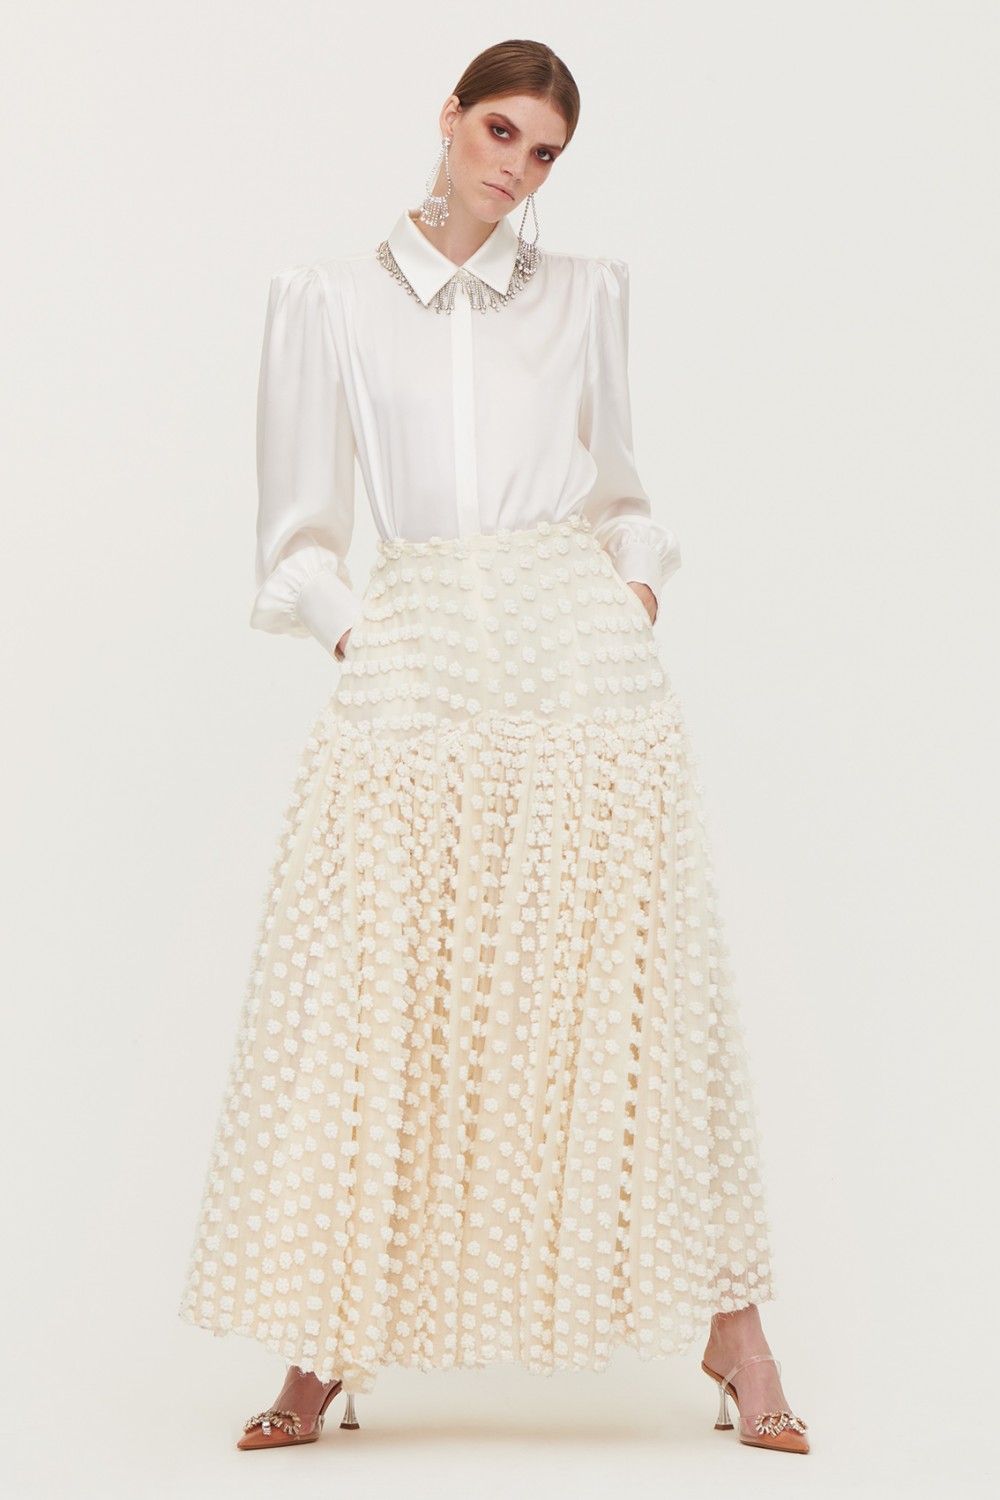 Pop-corn white skirt